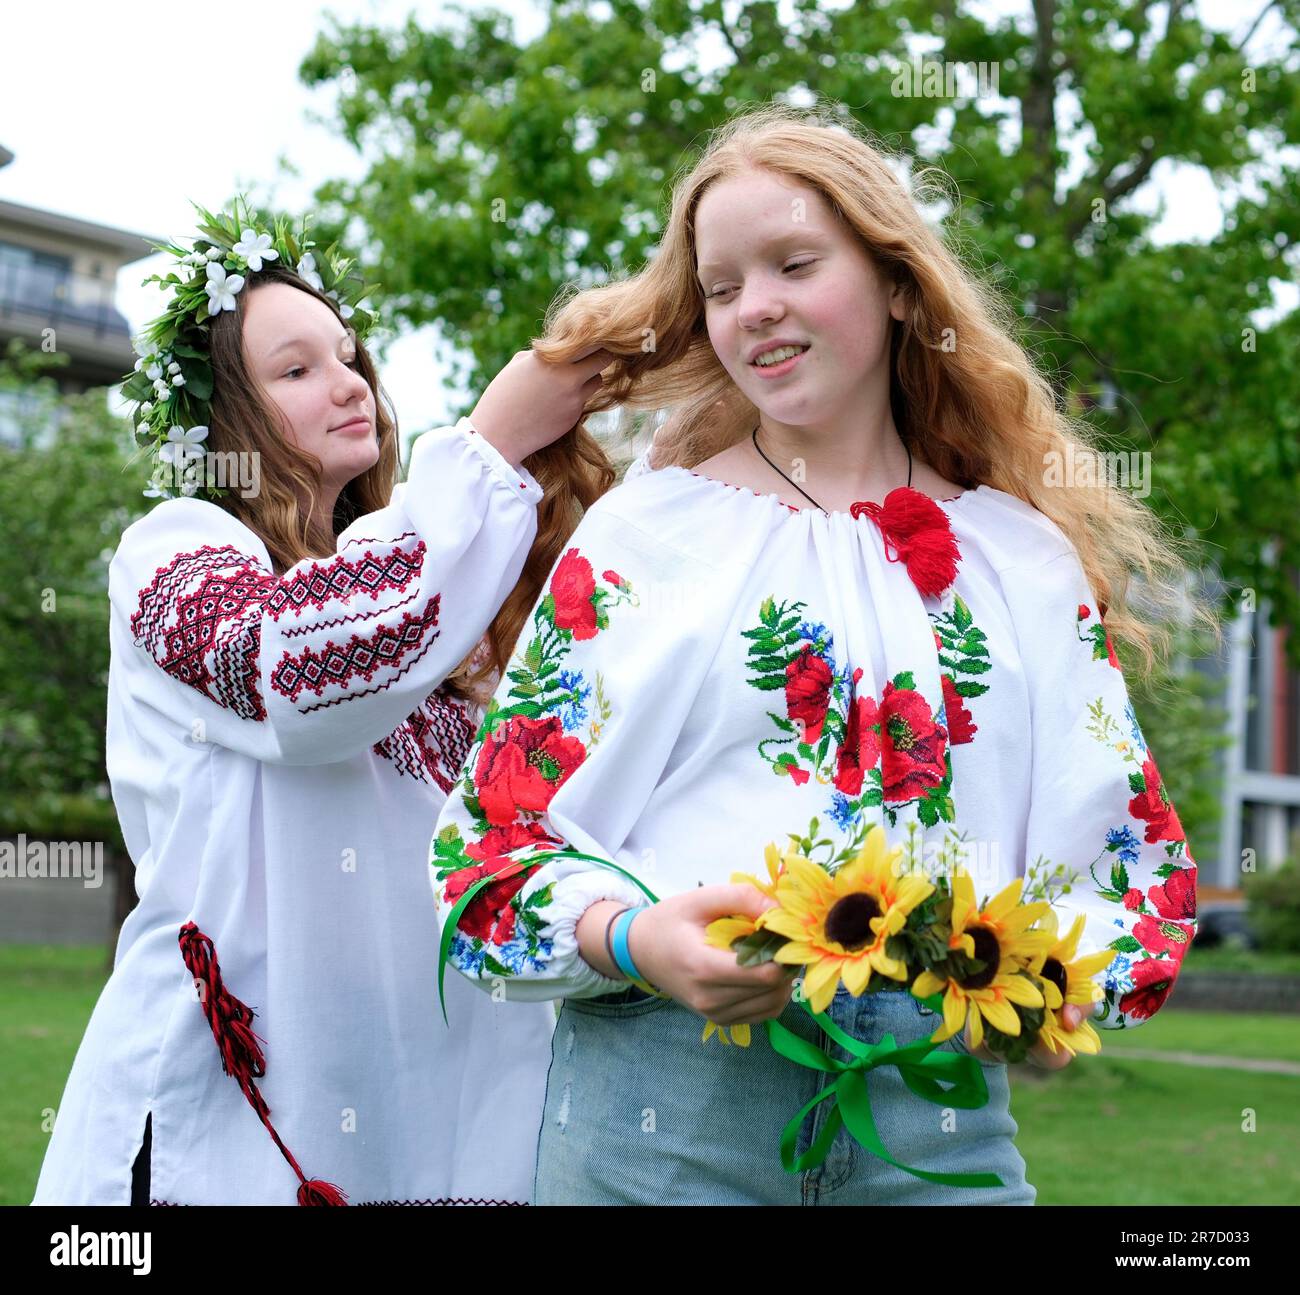 belle ragazze giovani donne tessendo corone a piedi ridendo chiacchierare nel parco in giardino ricamato nazionale camicie ucraine corone di girasole fiori e foresta fiori bianchi bella vyshyvanka Foto Stock